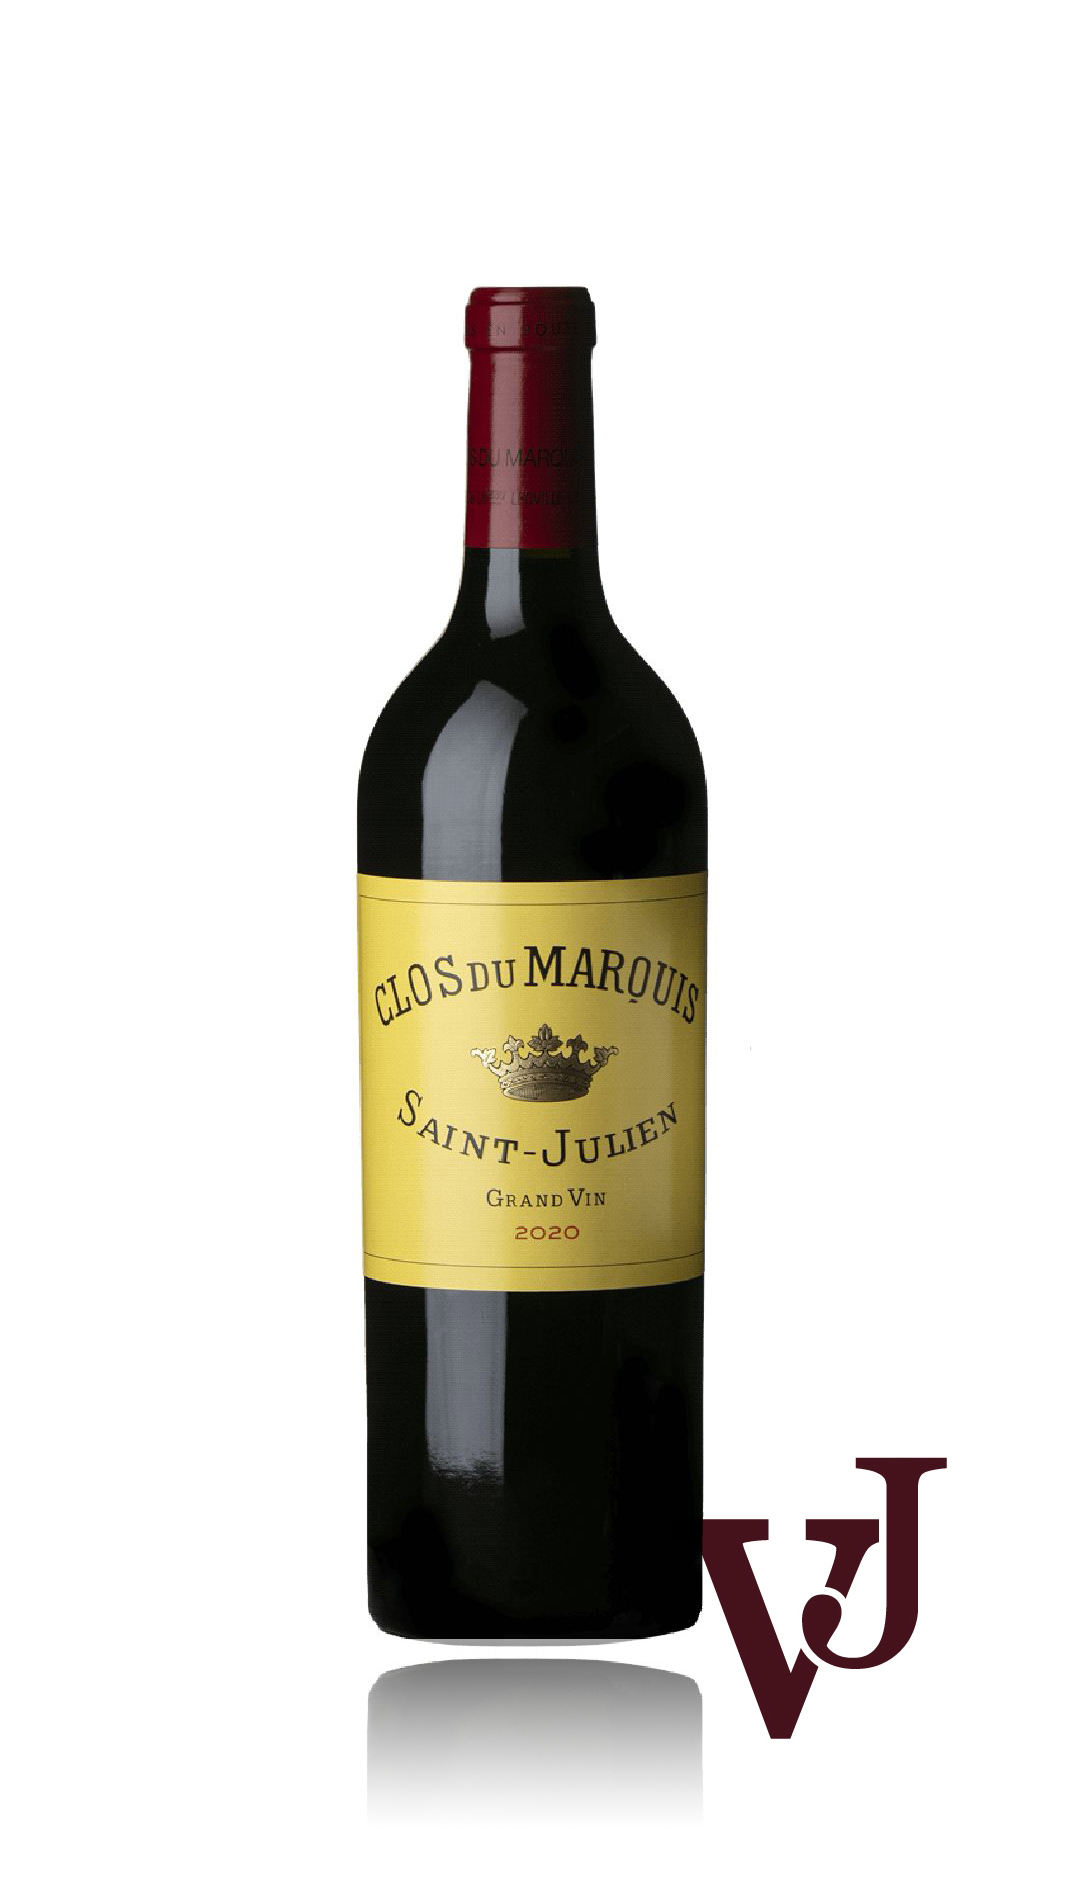 Rött Vin - Clos Du Marquis 2020 artikel nummer 9063401 från producenten Crus et Domaines de France från området Frankrike